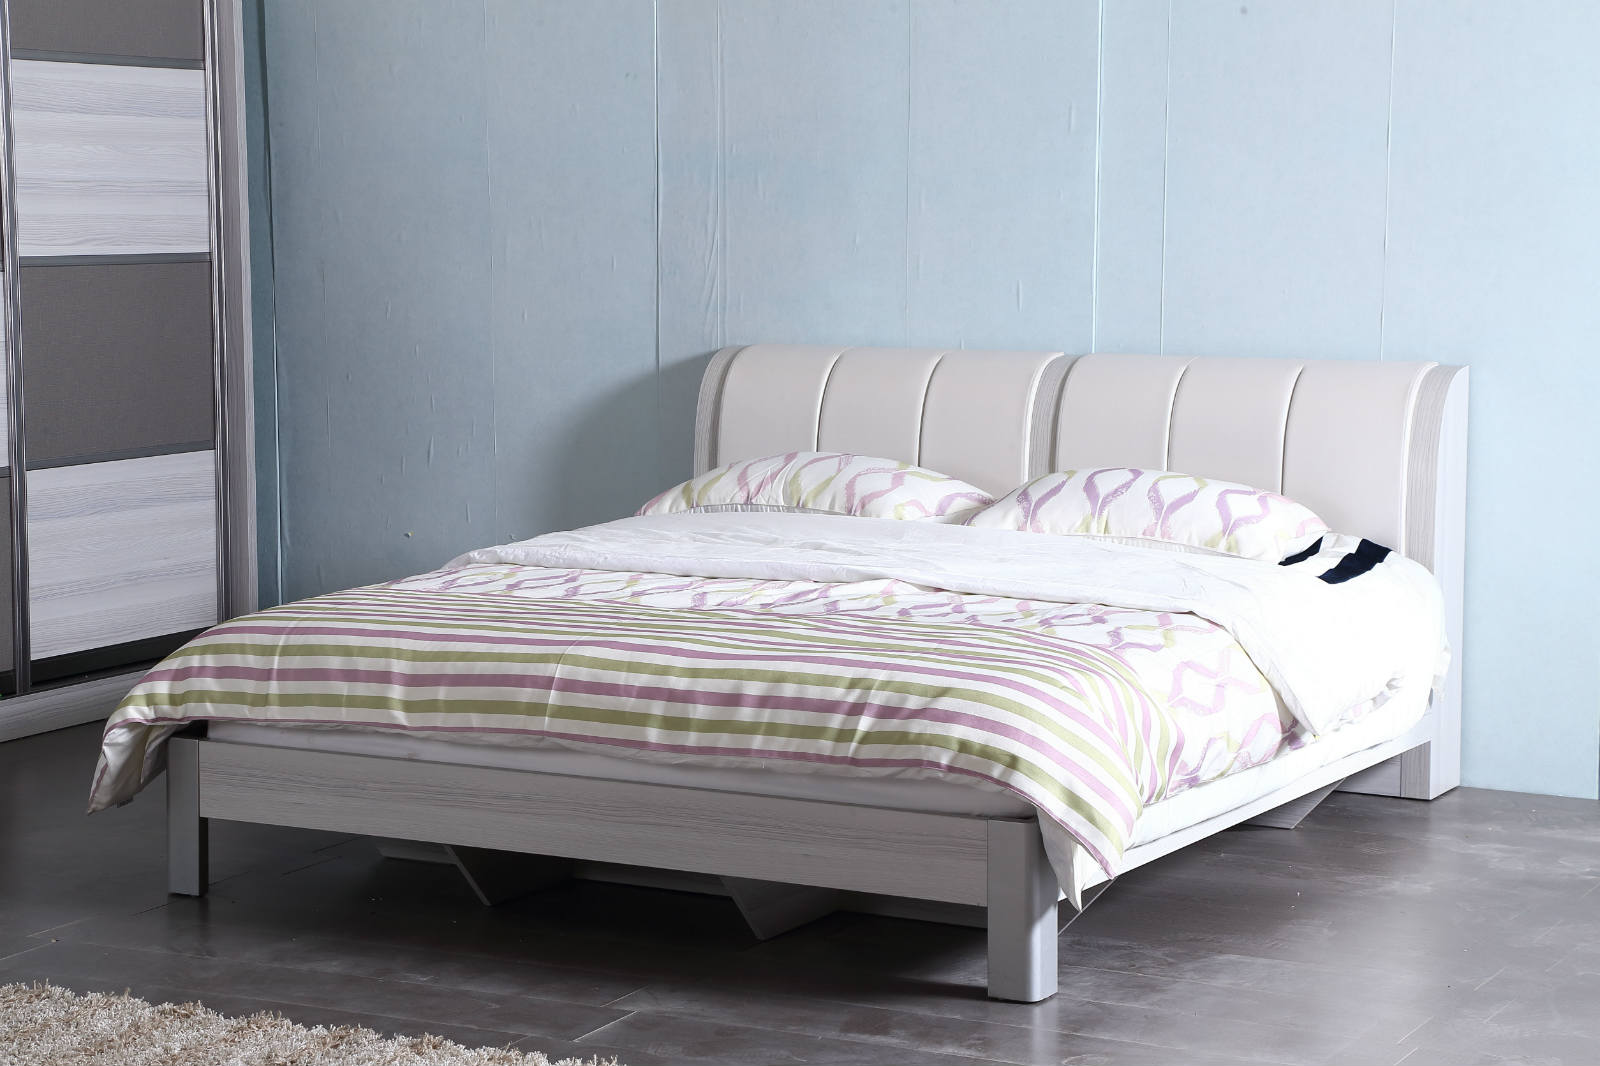 710佳林床现代风格环保床